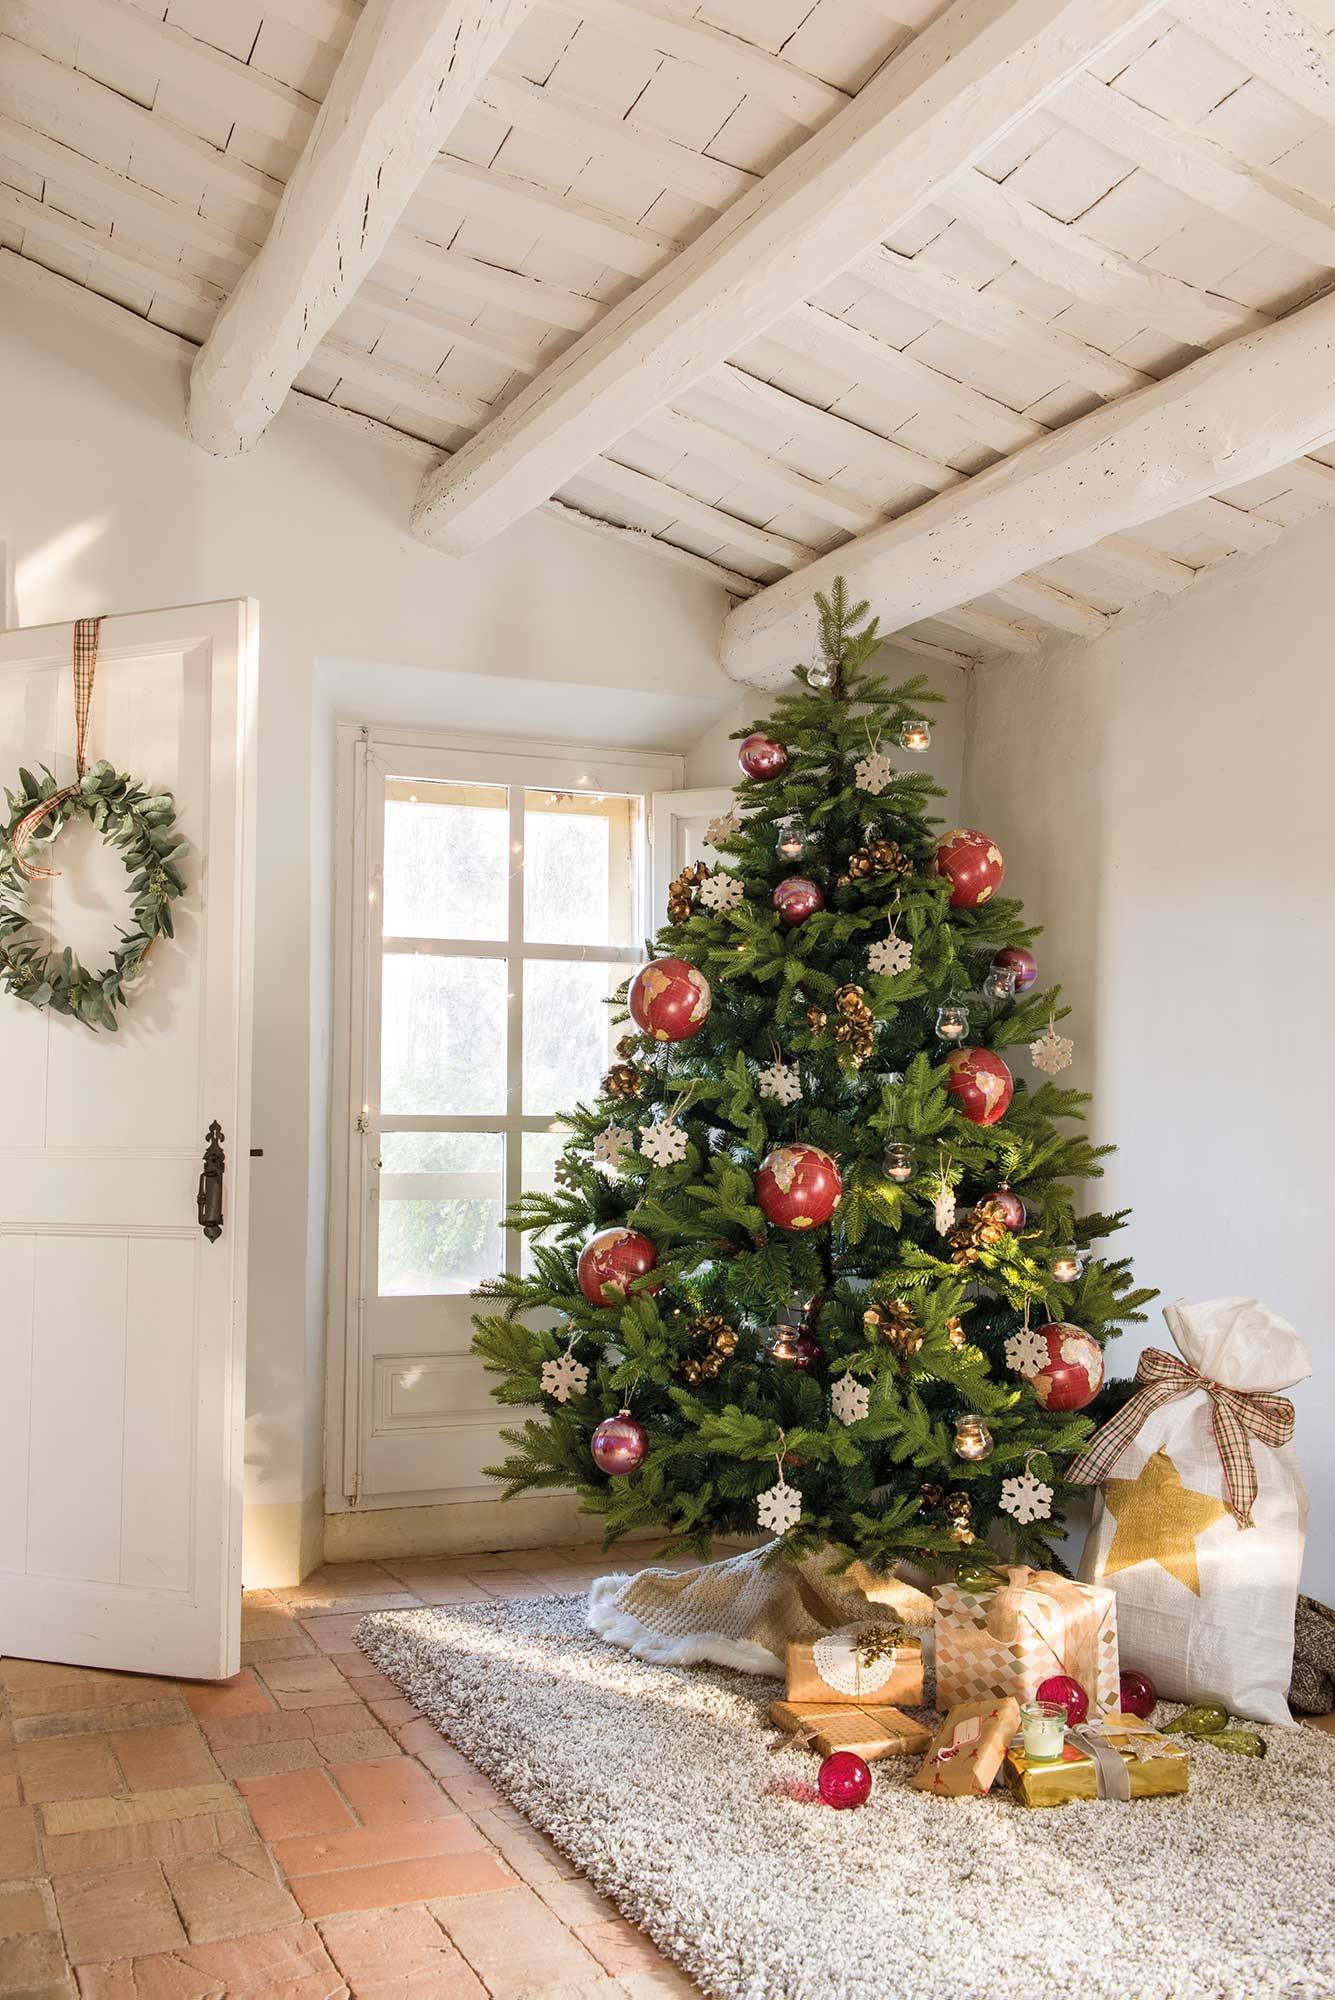 Recibidor con árbol decorado para Navidad.